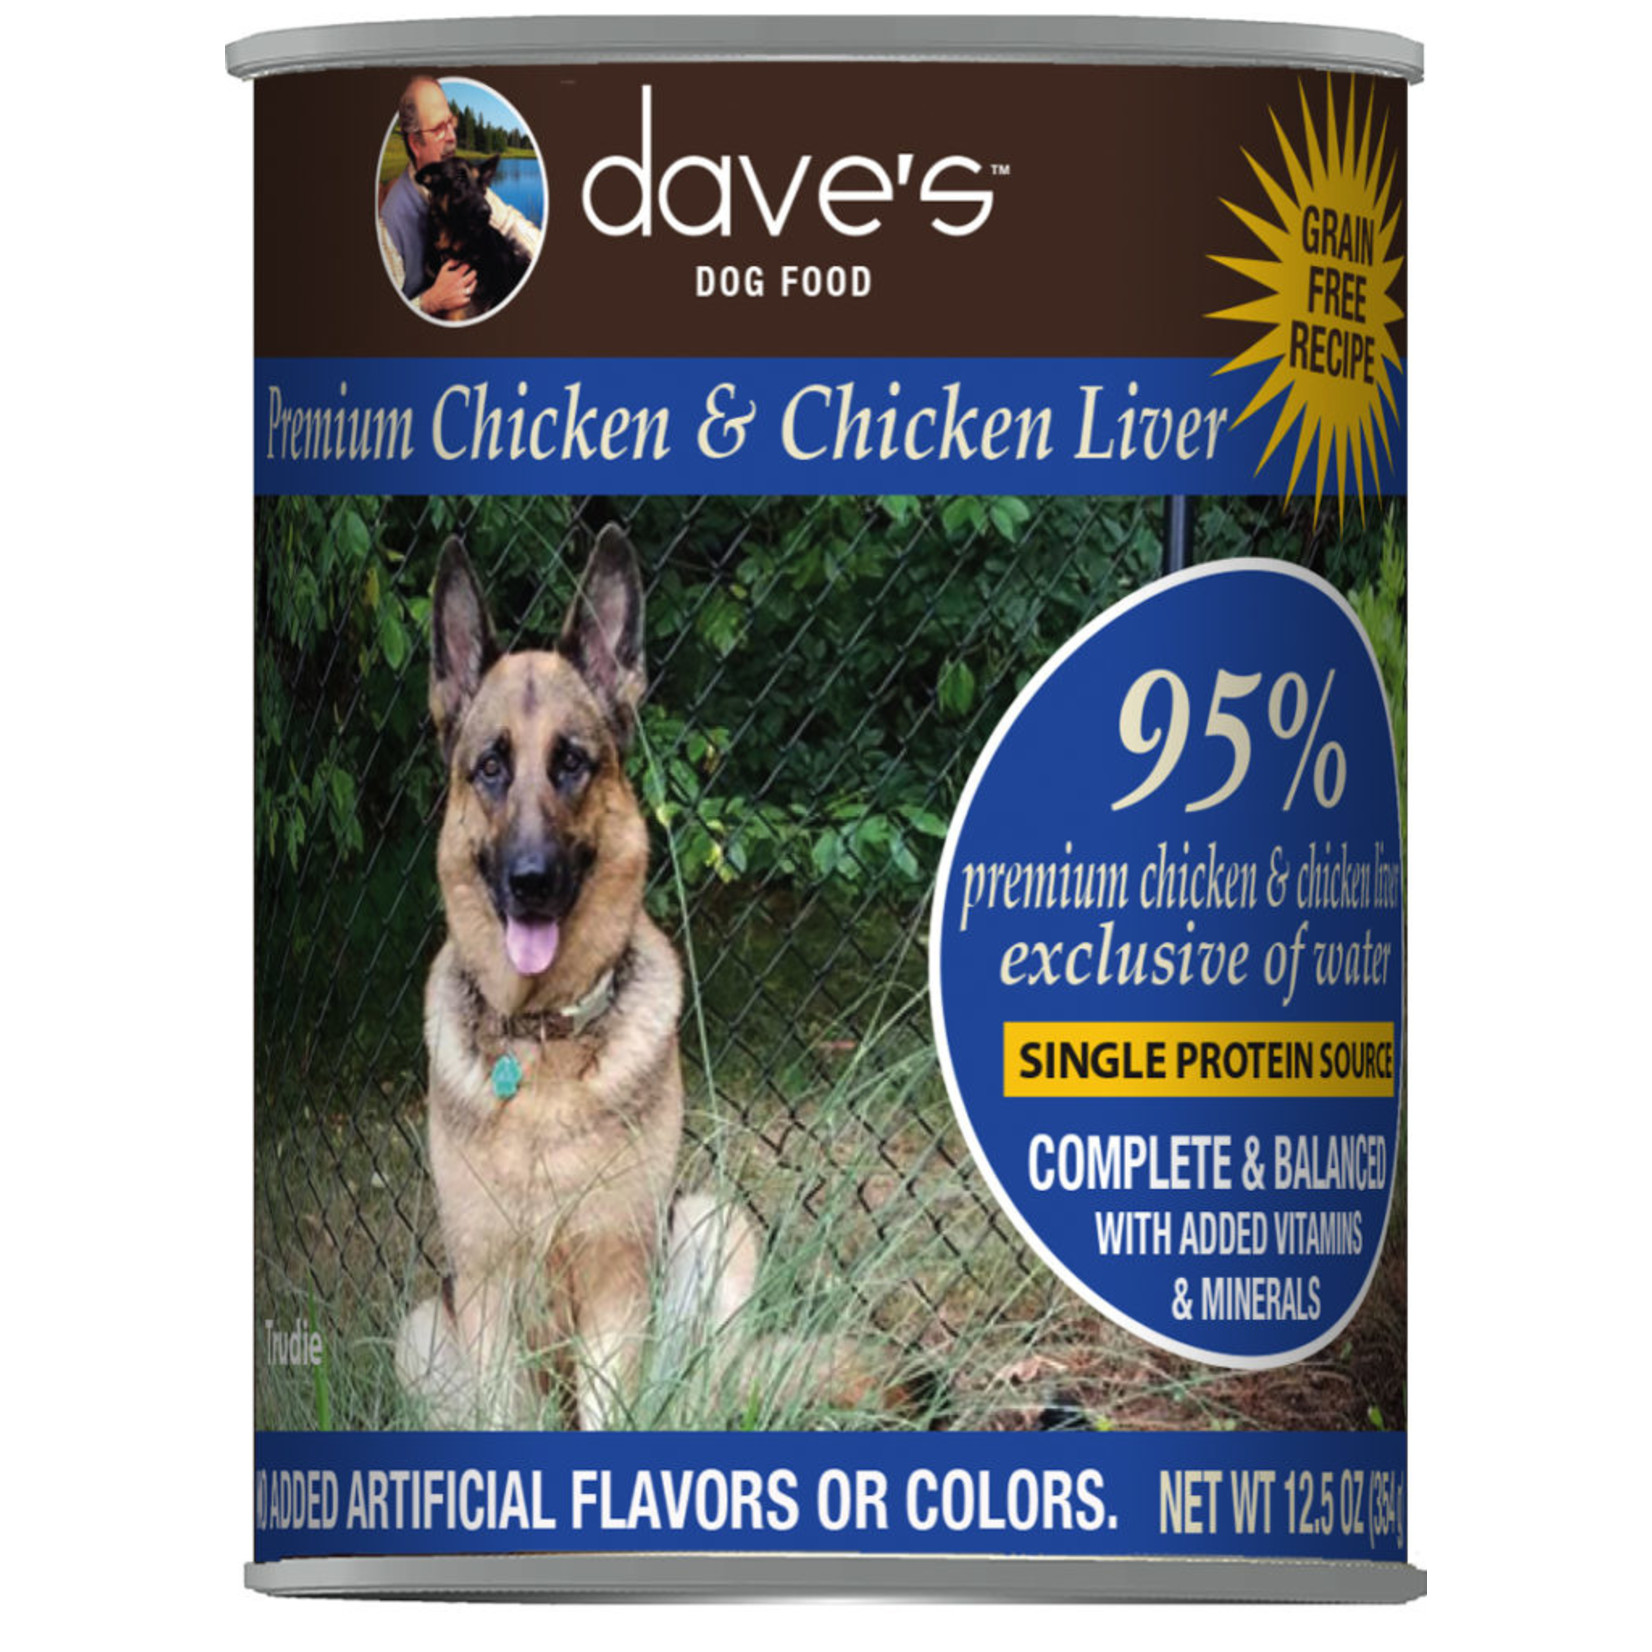 Daves Pet Food Dave's Wet Dog Food 95% Premium Chicken & Chicken Liver 12.5oz Can Grain Free